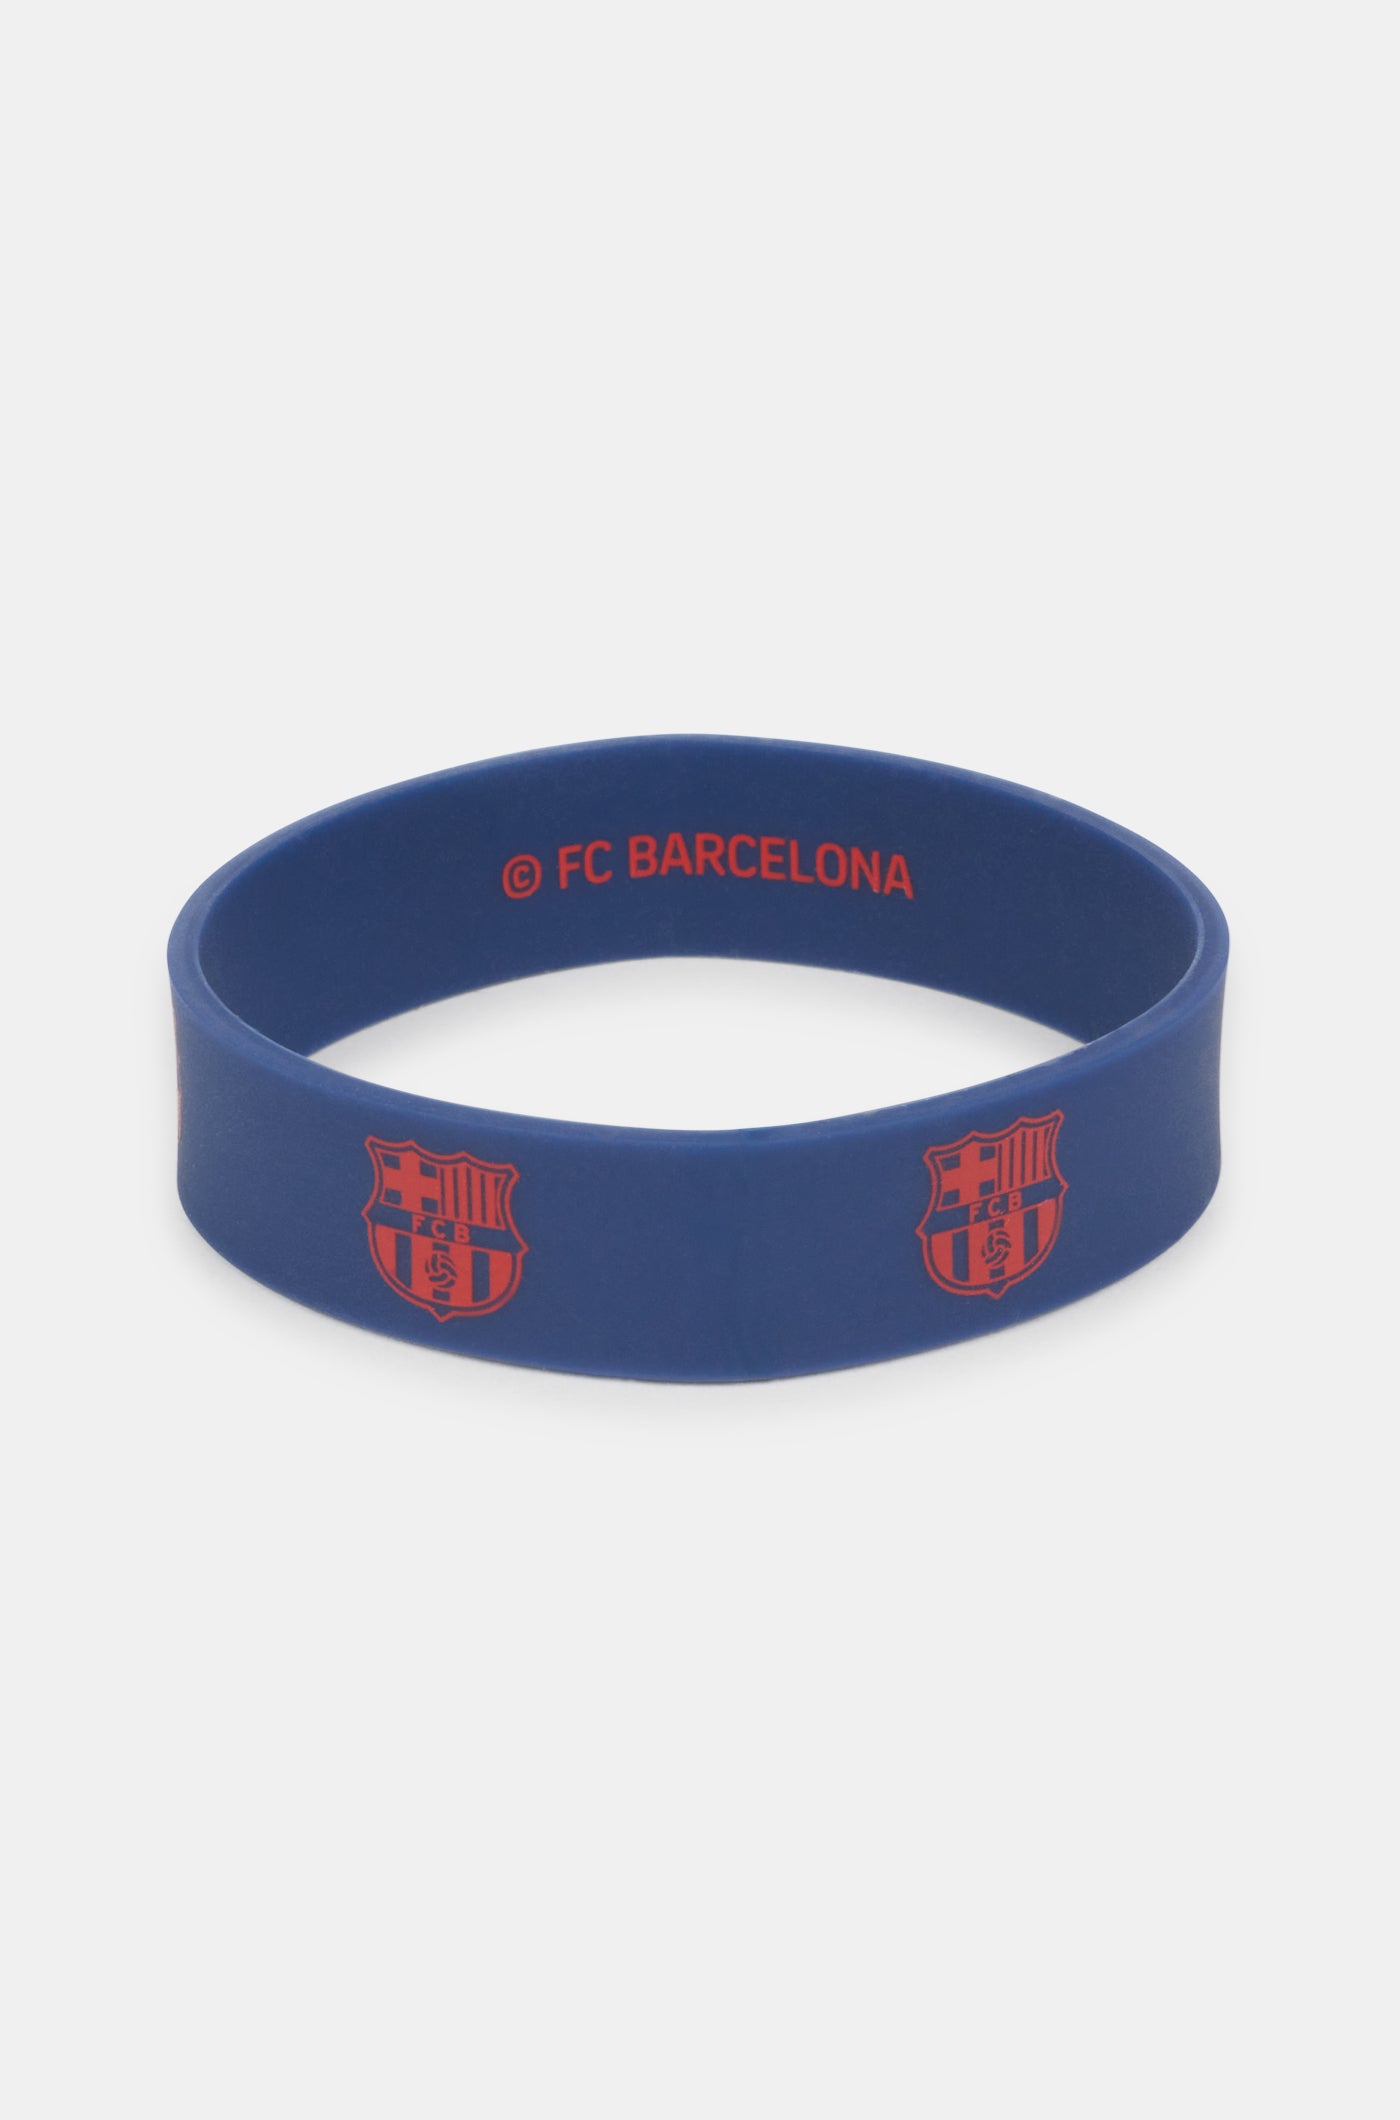  Elastisches Armband mit blauem Schild des FC Barcelona